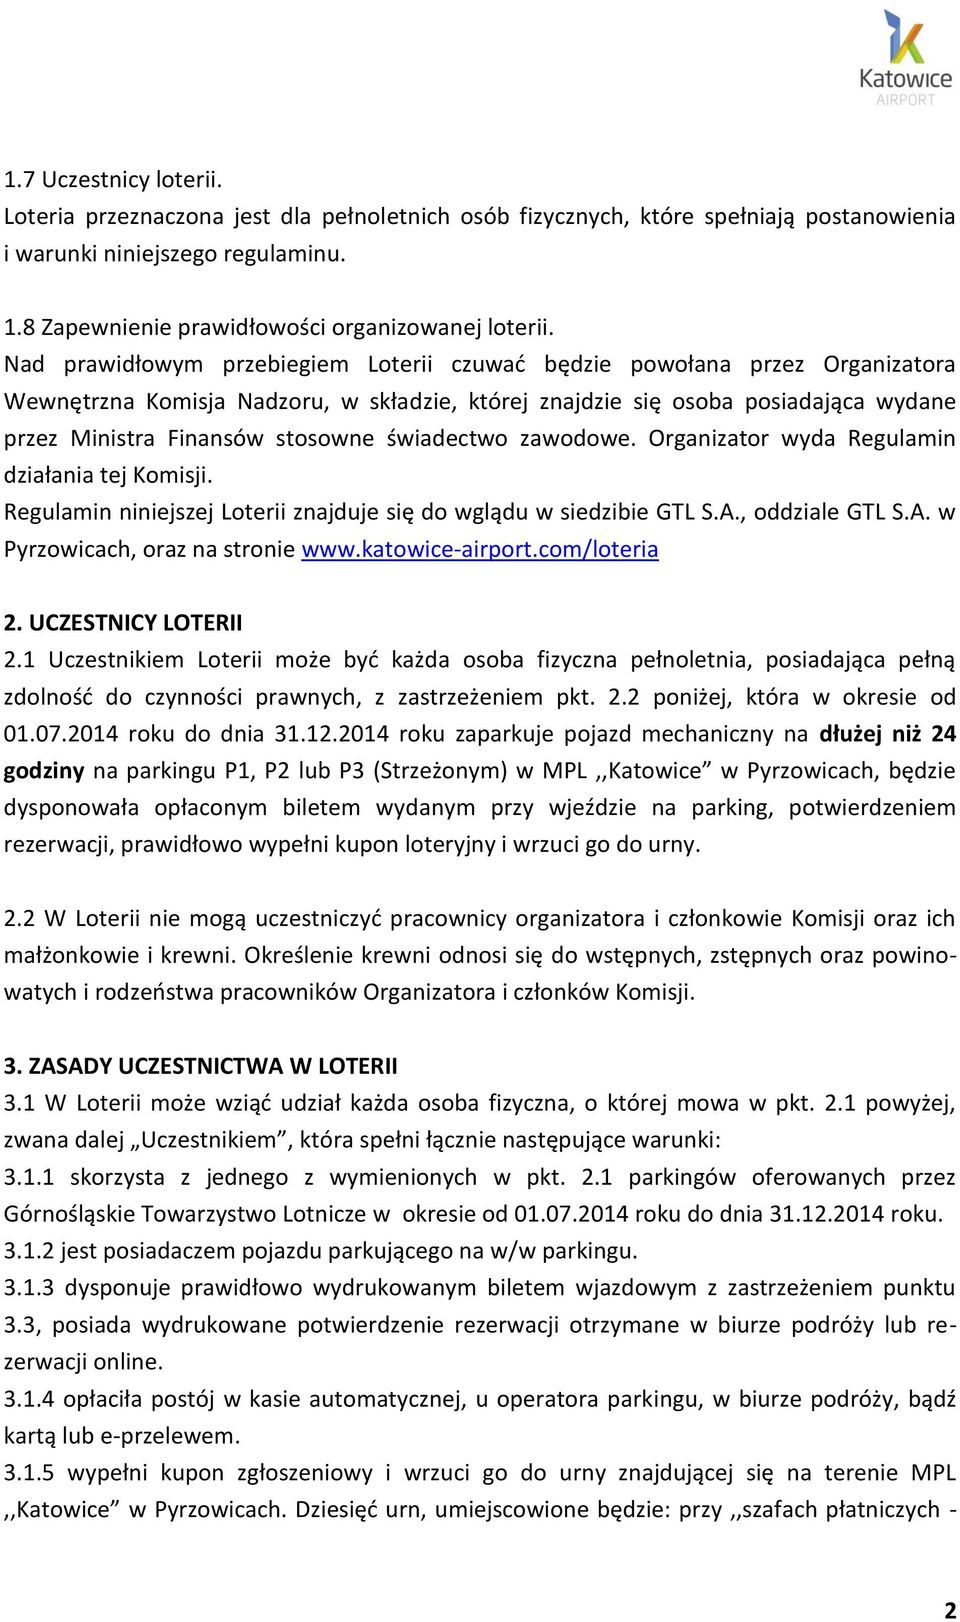 świadectwo zawodowe. Organizator wyda Regulamin działania tej Komisji. Regulamin niniejszej Loterii znajduje się do wglądu w siedzibie GTL S.A., oddziale GTL S.A. w Pyrzowicach, oraz na stronie www.